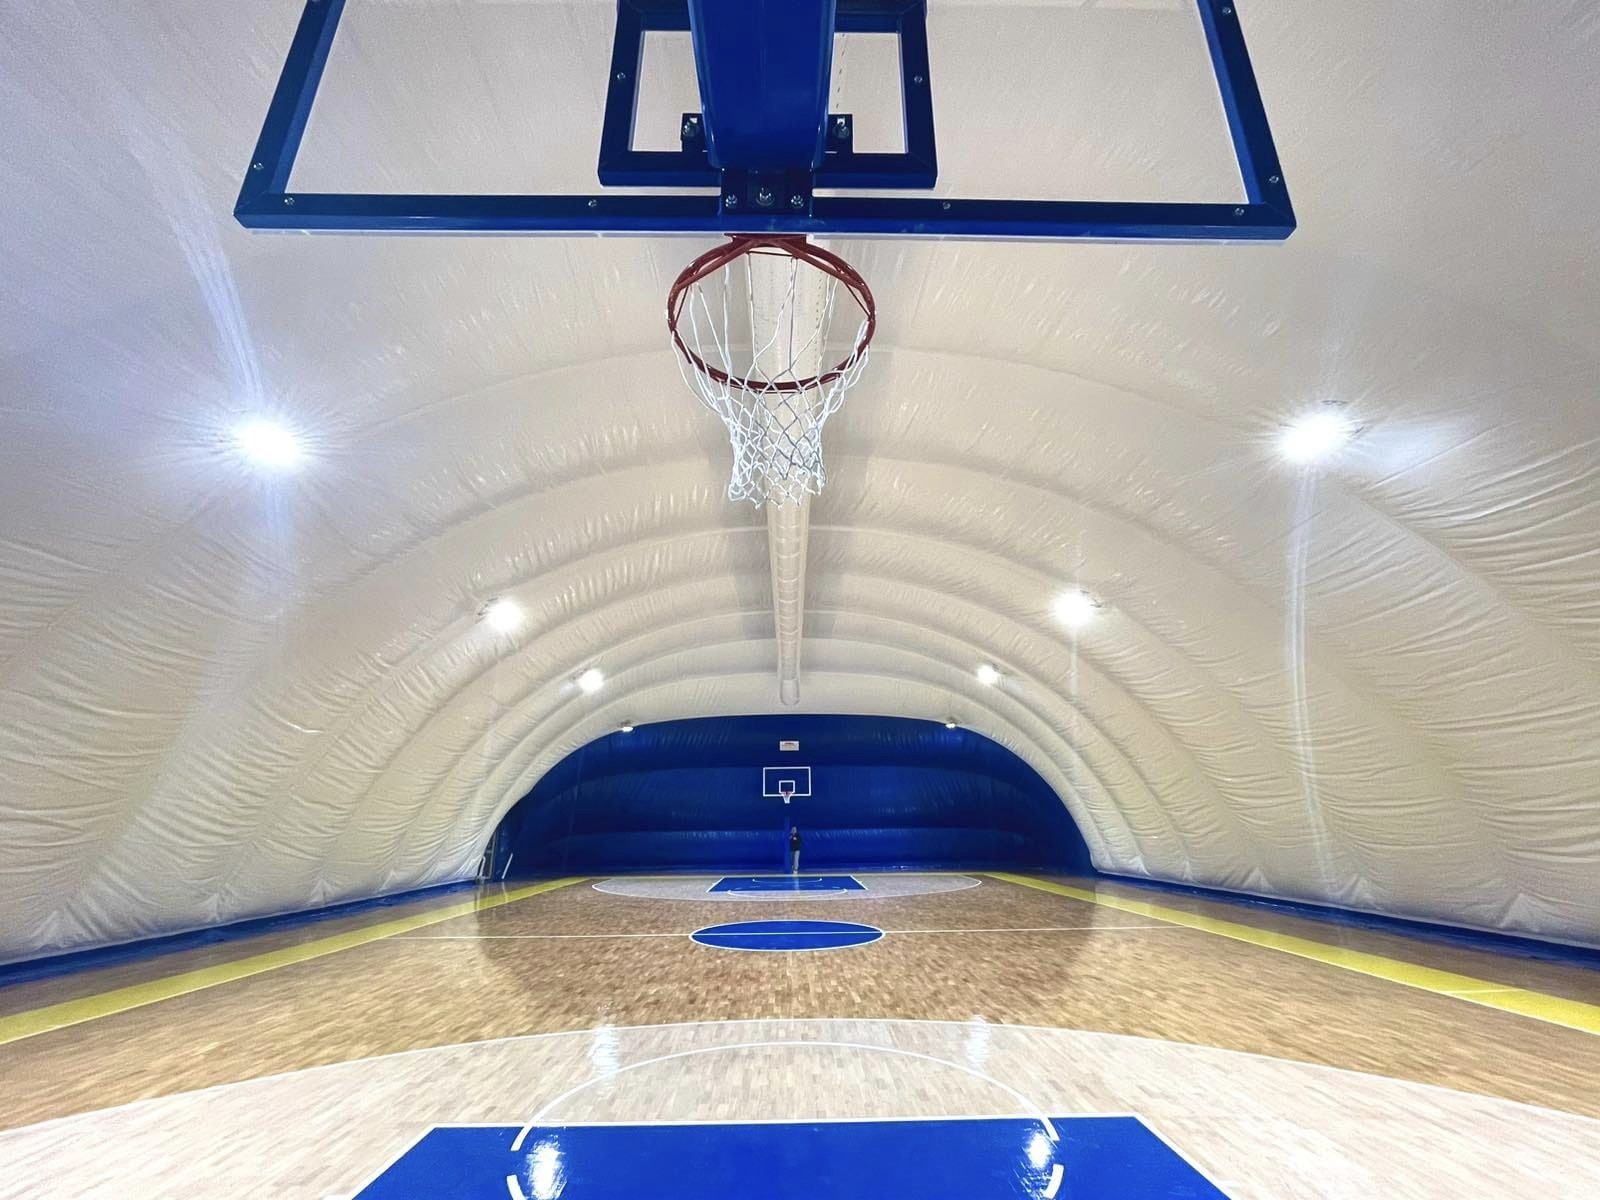 Σε φωτογραφίες του καινούριου κλειστού γήπεδο μπάσκετ προέβη ο Δήμος Γλυφάδας (pic)